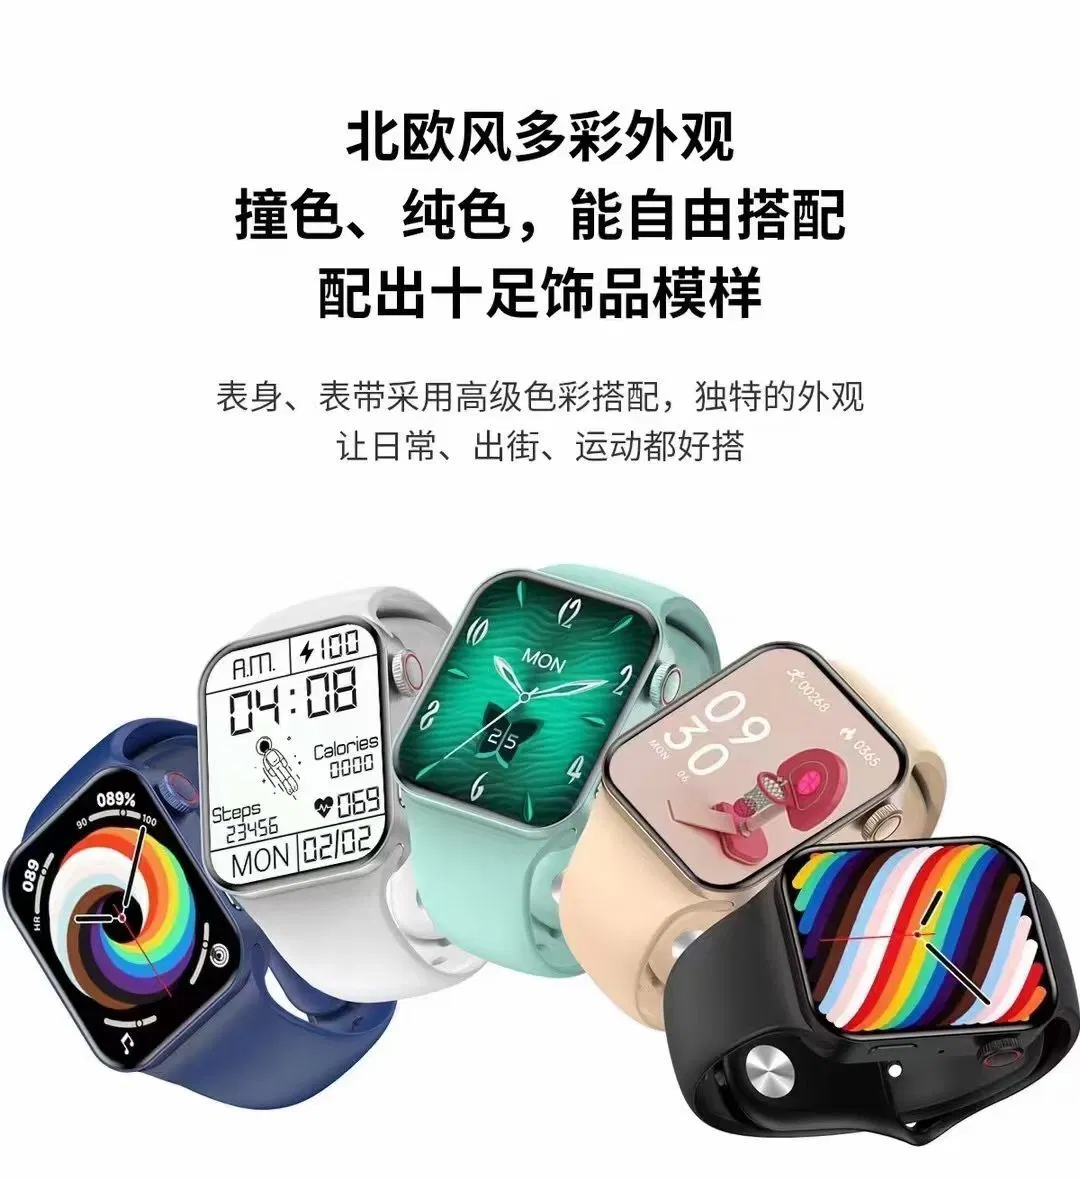 На заводе Hotselling оптовой водонепроницаемый Smartwatch продуктов в области здравоохранения